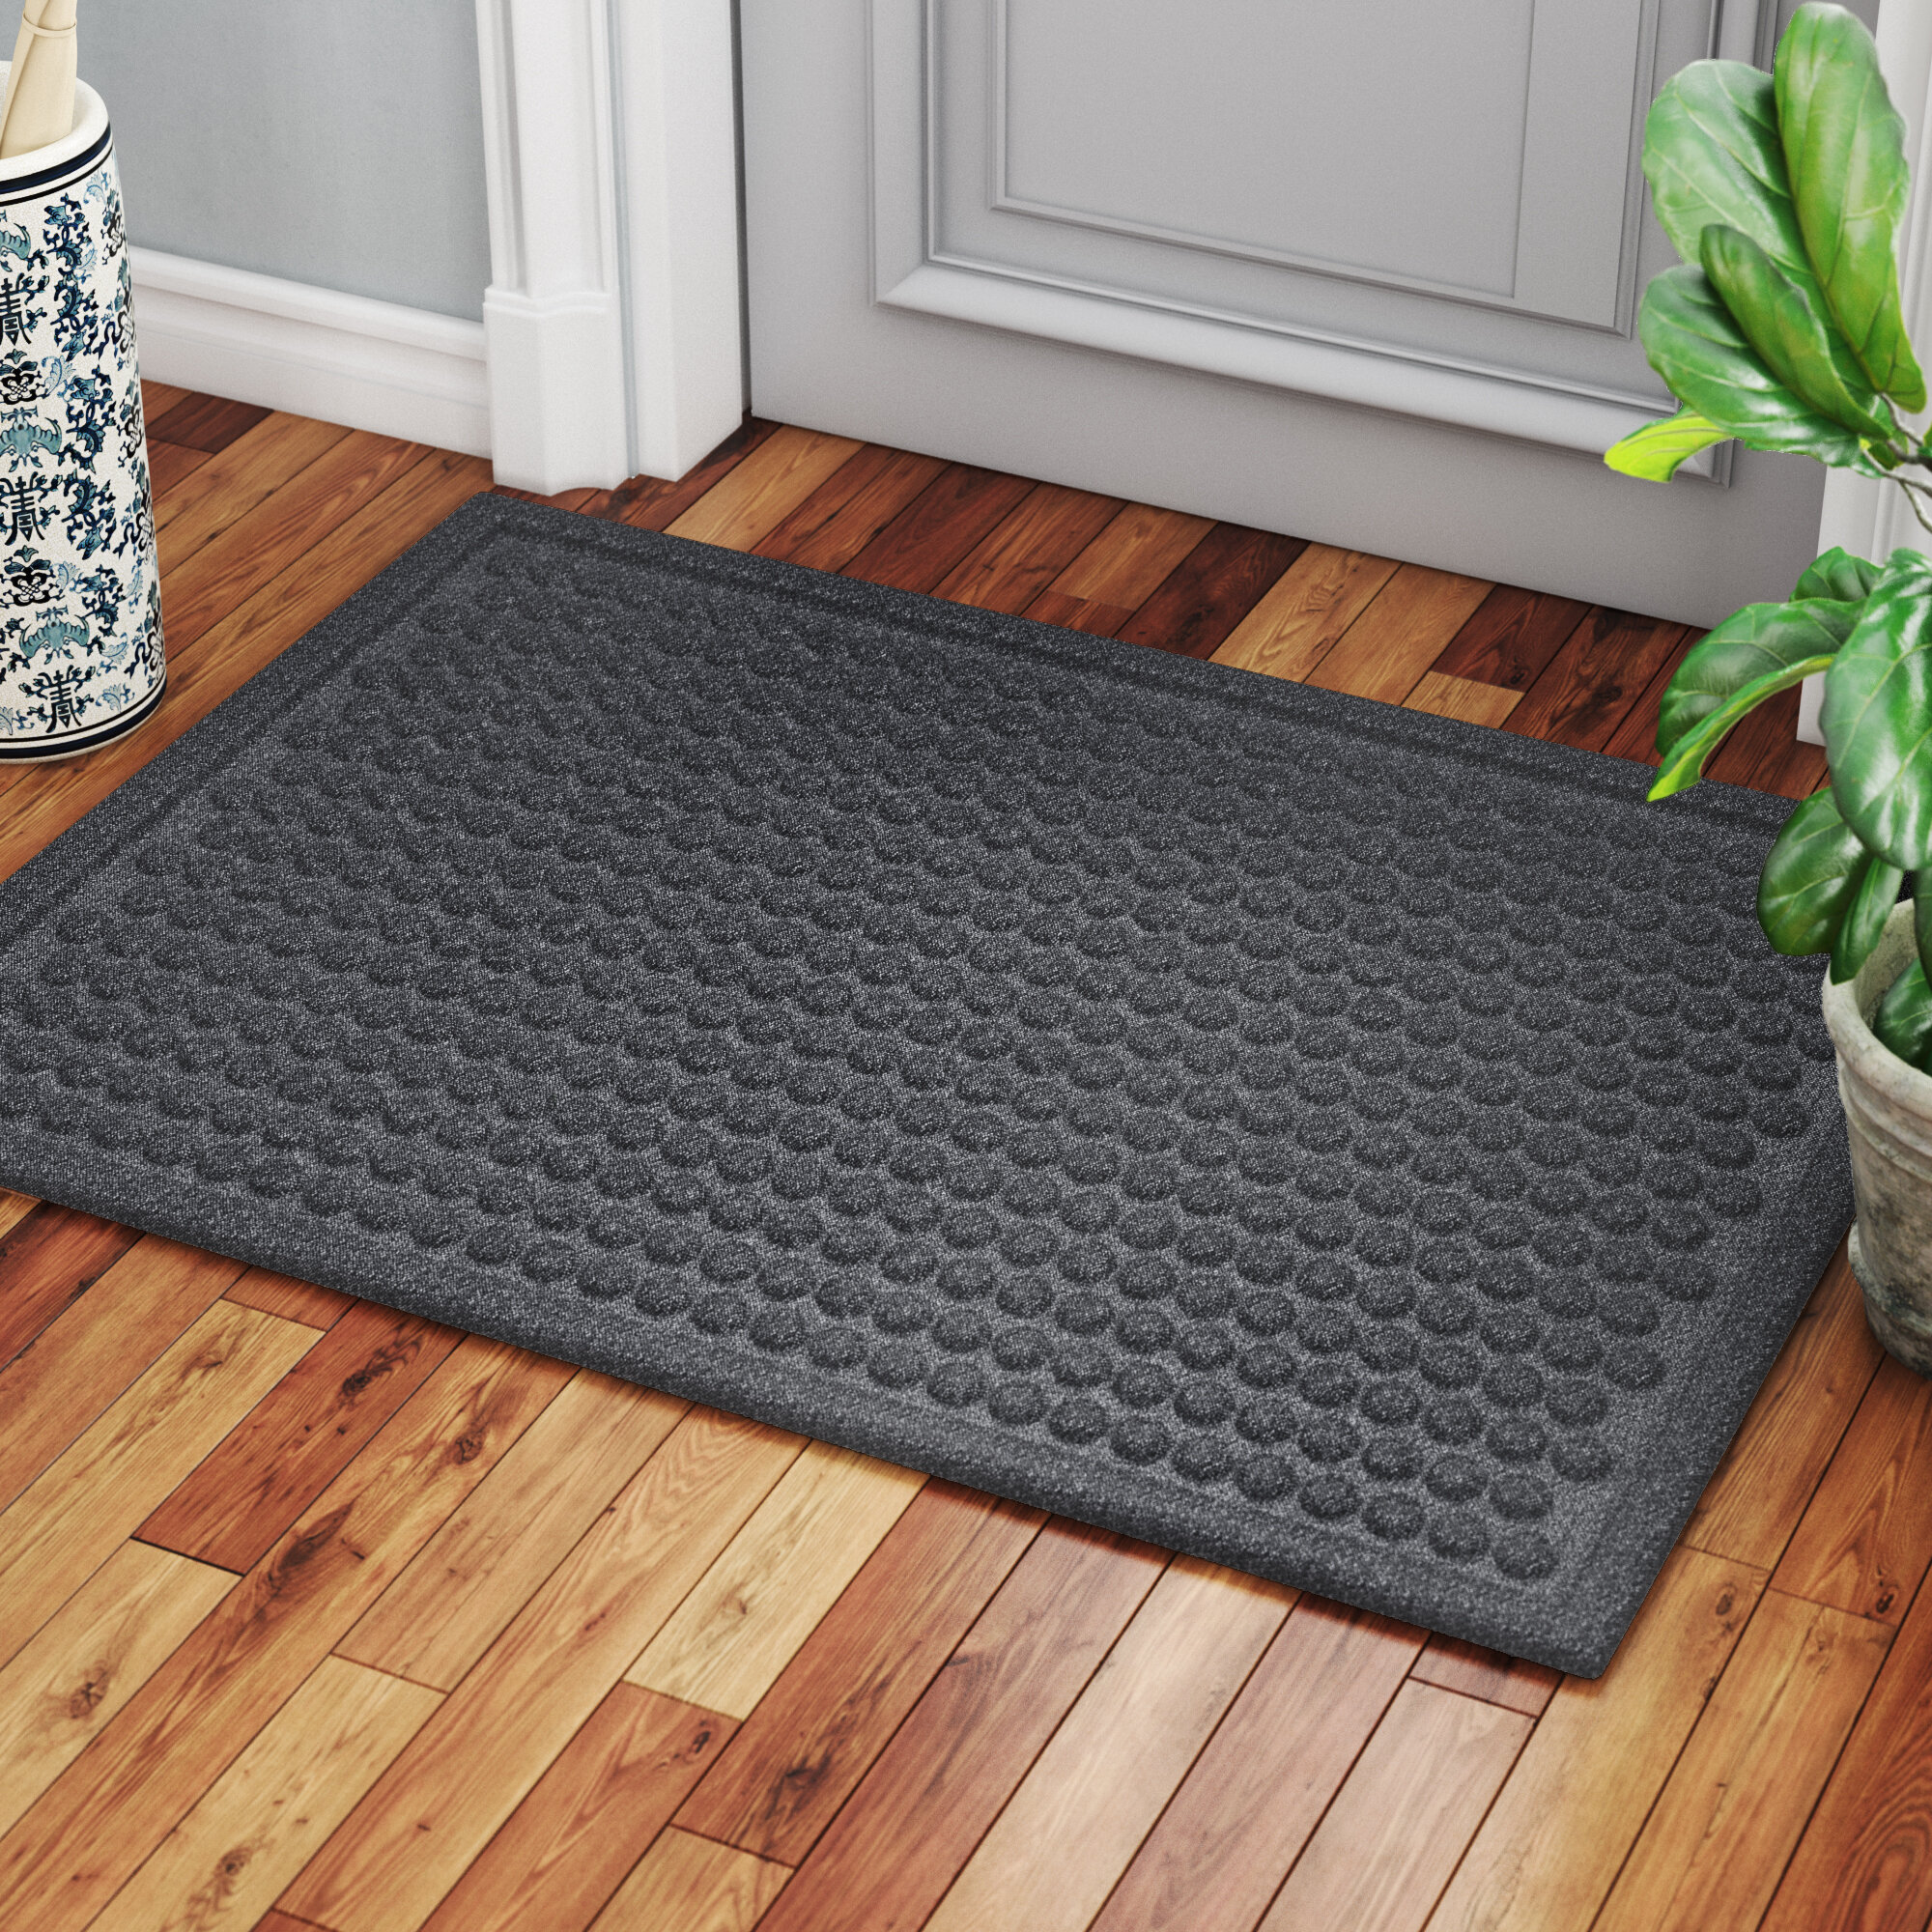 Polyester rug Door Matfor Indoor Outdoor Waterproof Easy Clean 